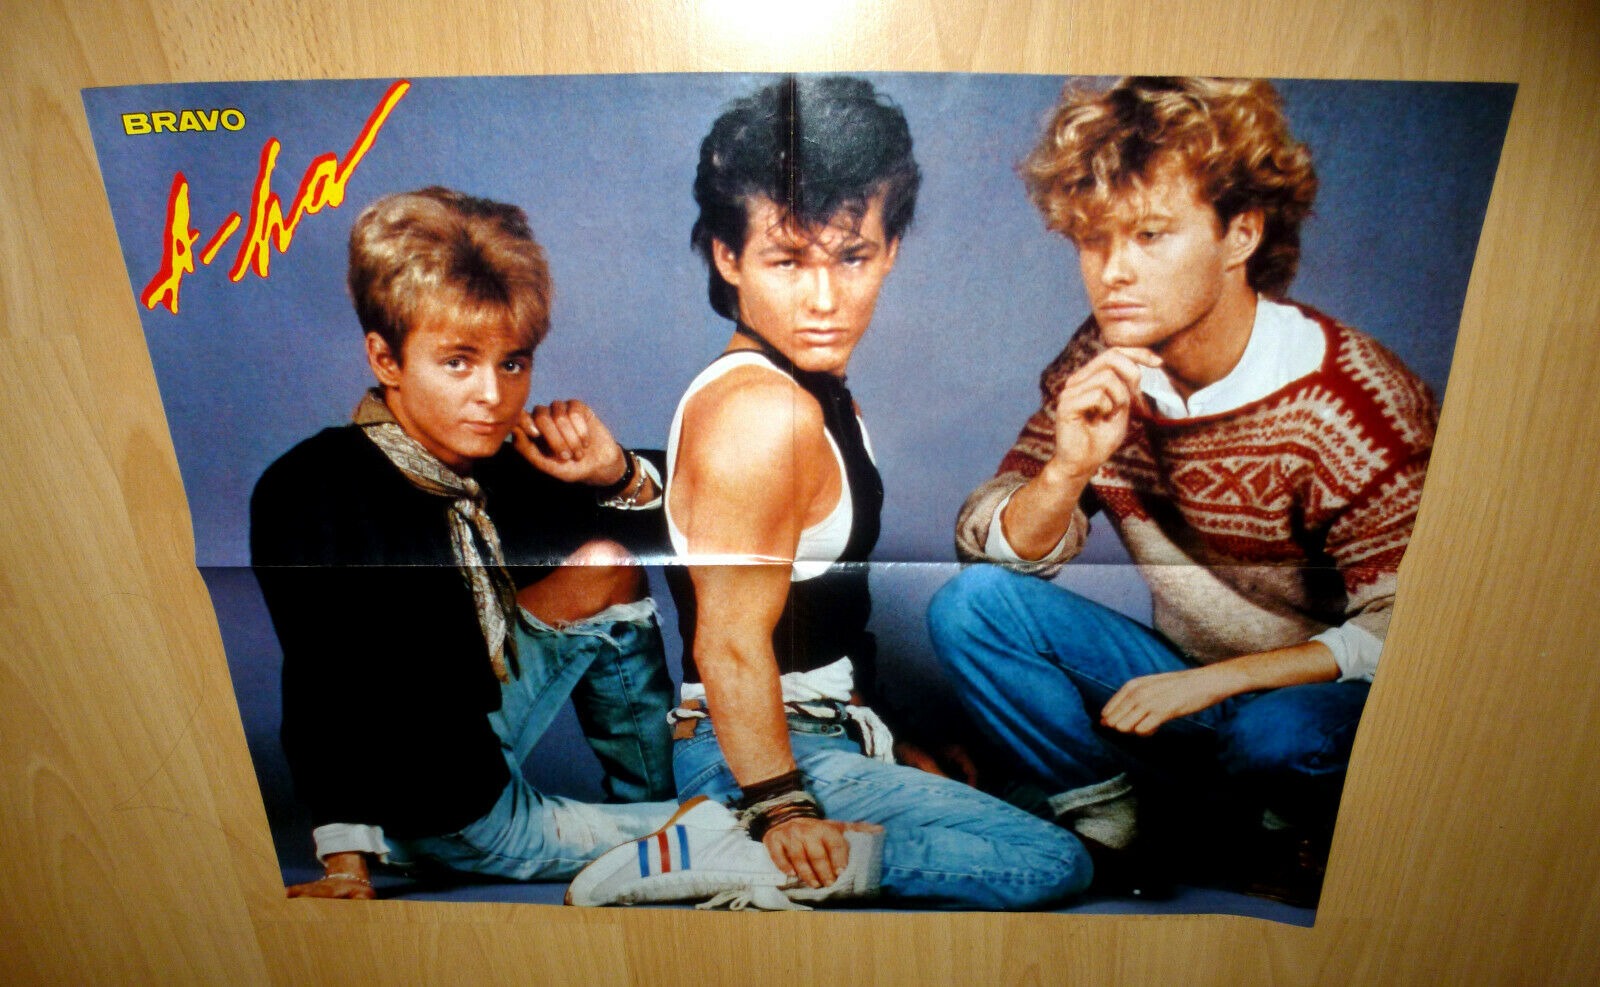 A-Ha Poster - Poster aus einem Bravo Heft aus den 80ern